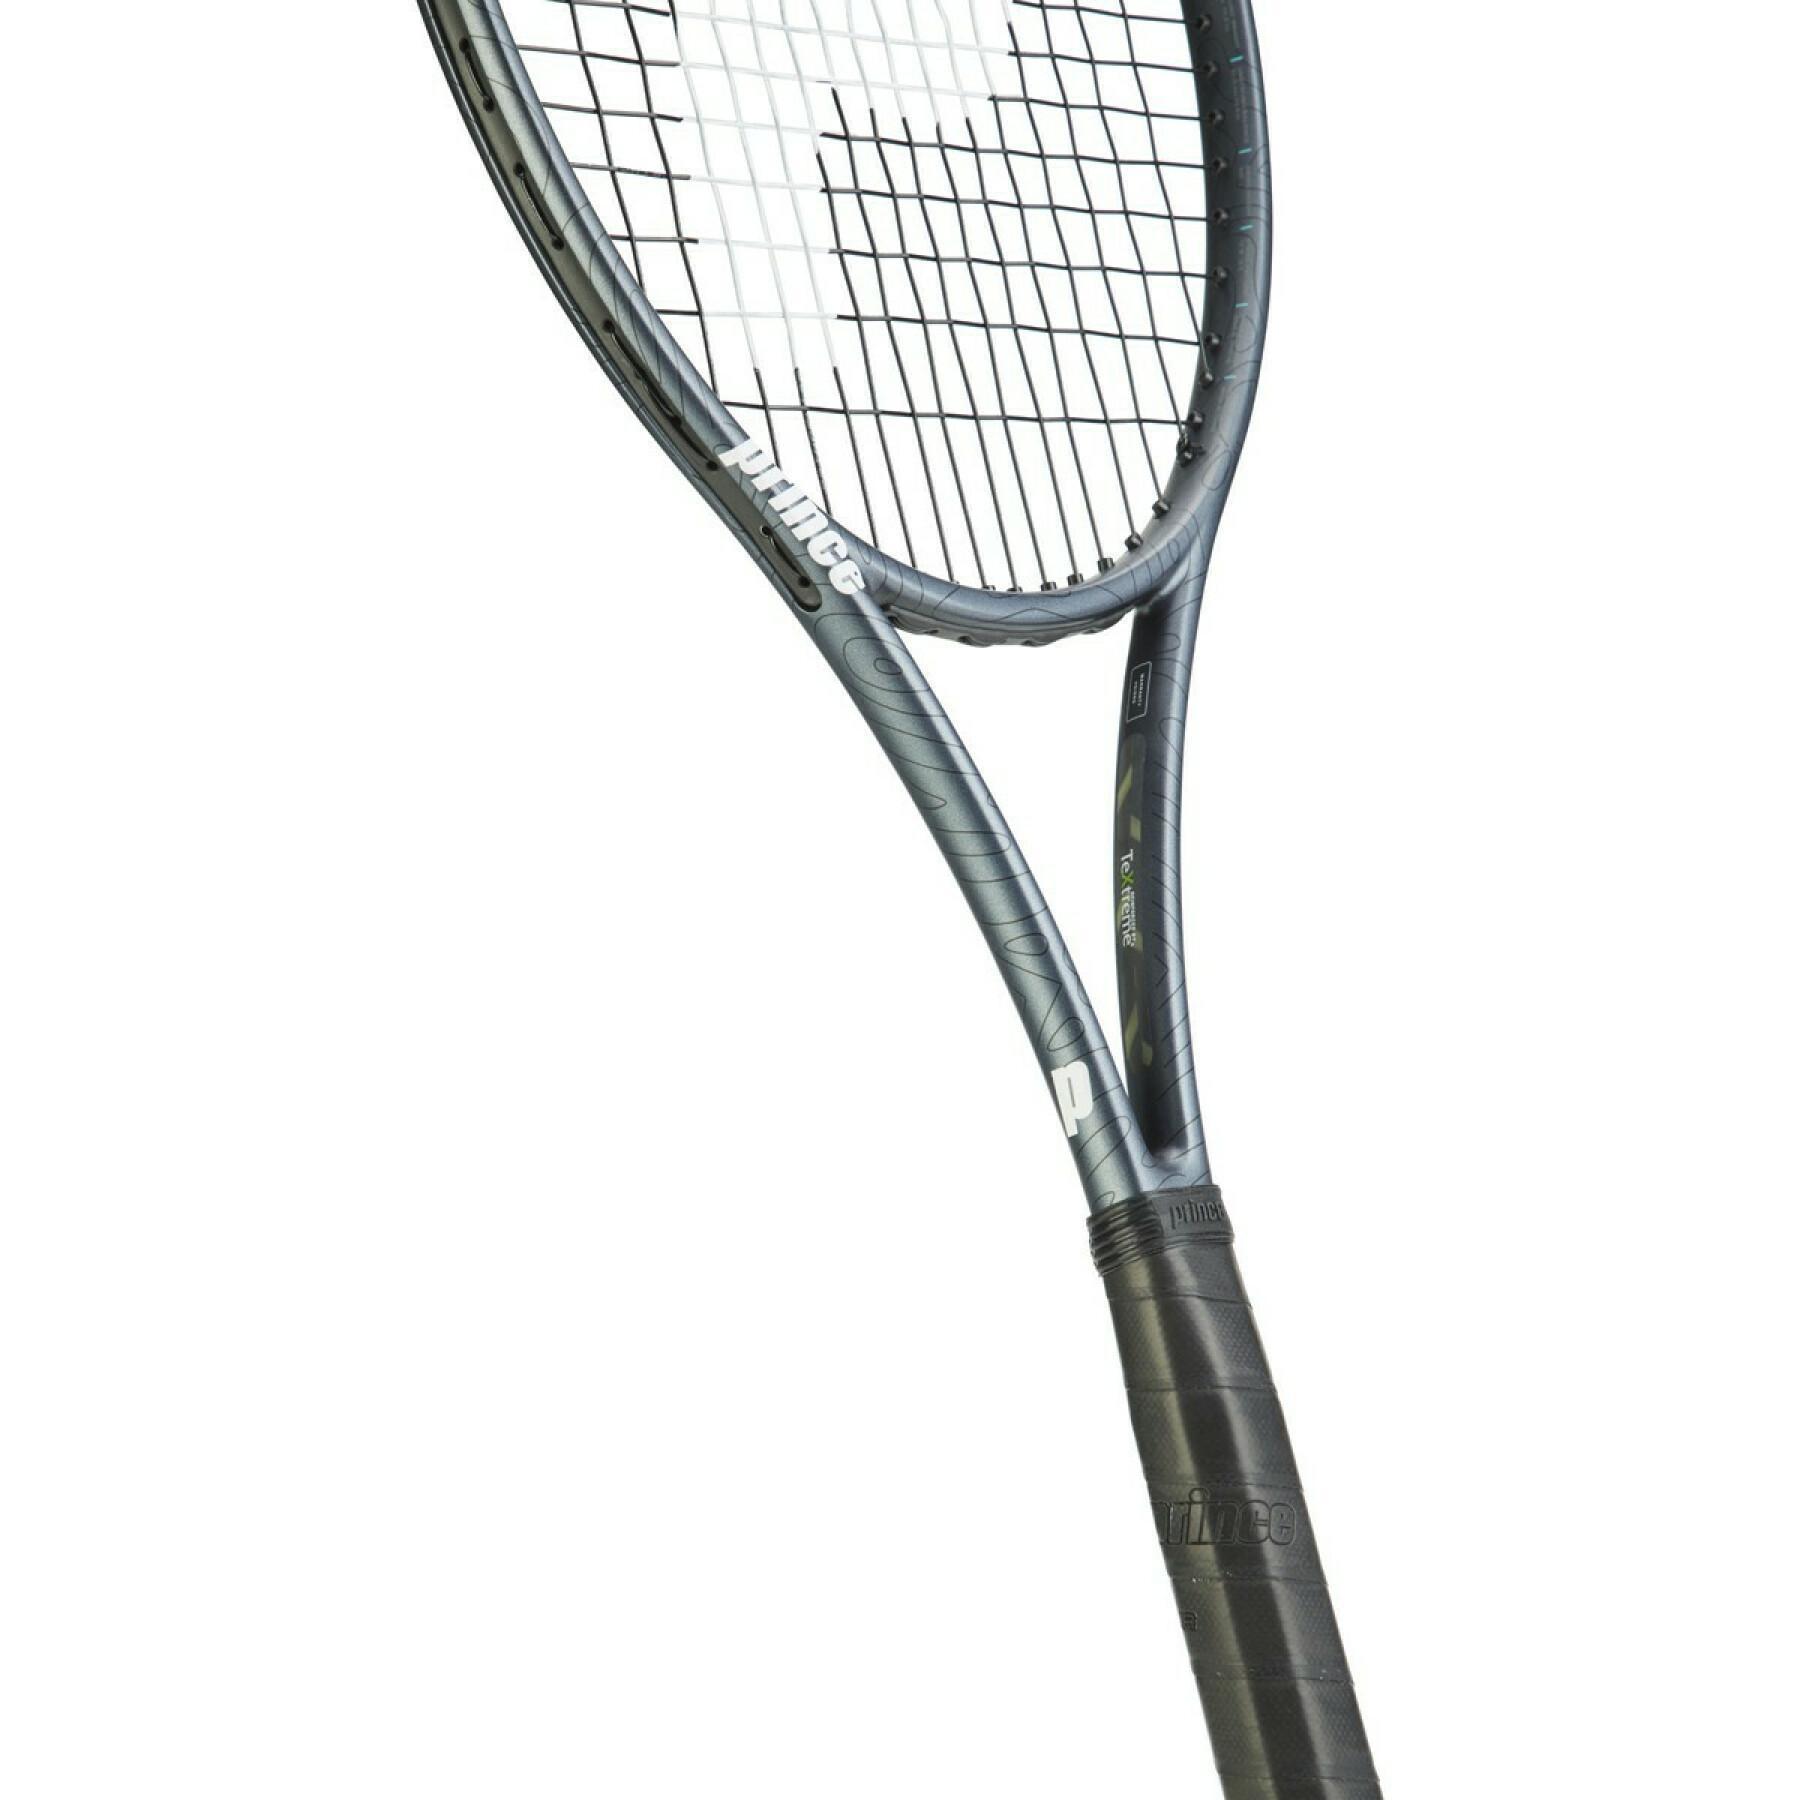 Raquette de tennis Prince phantom 100x (290gr)